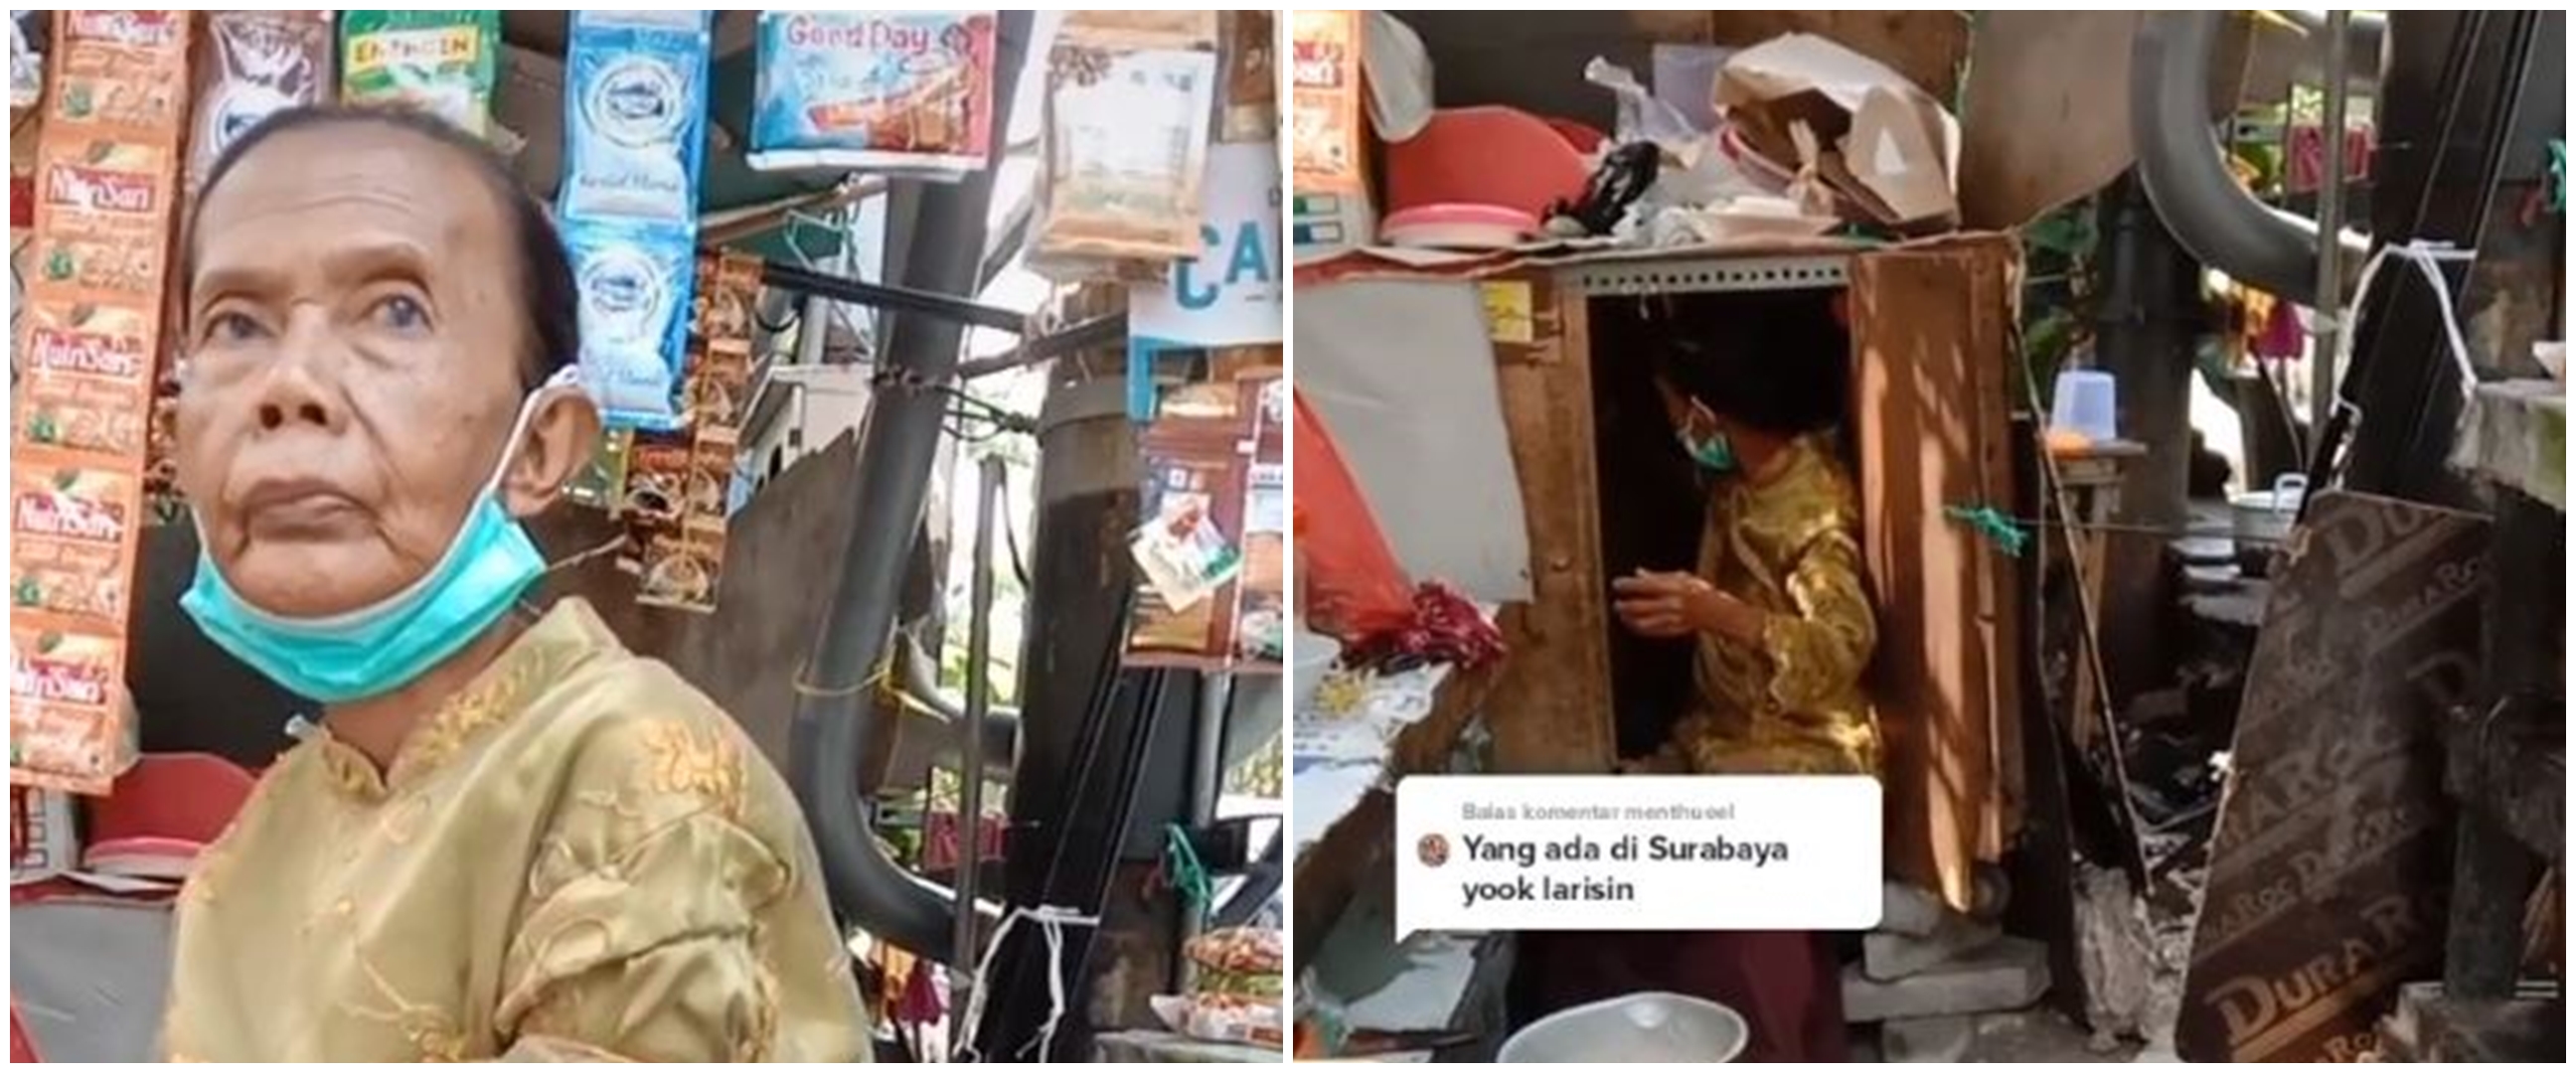 Sebatang kara, nenek penjual minuman di Surabaya tinggal di lemari